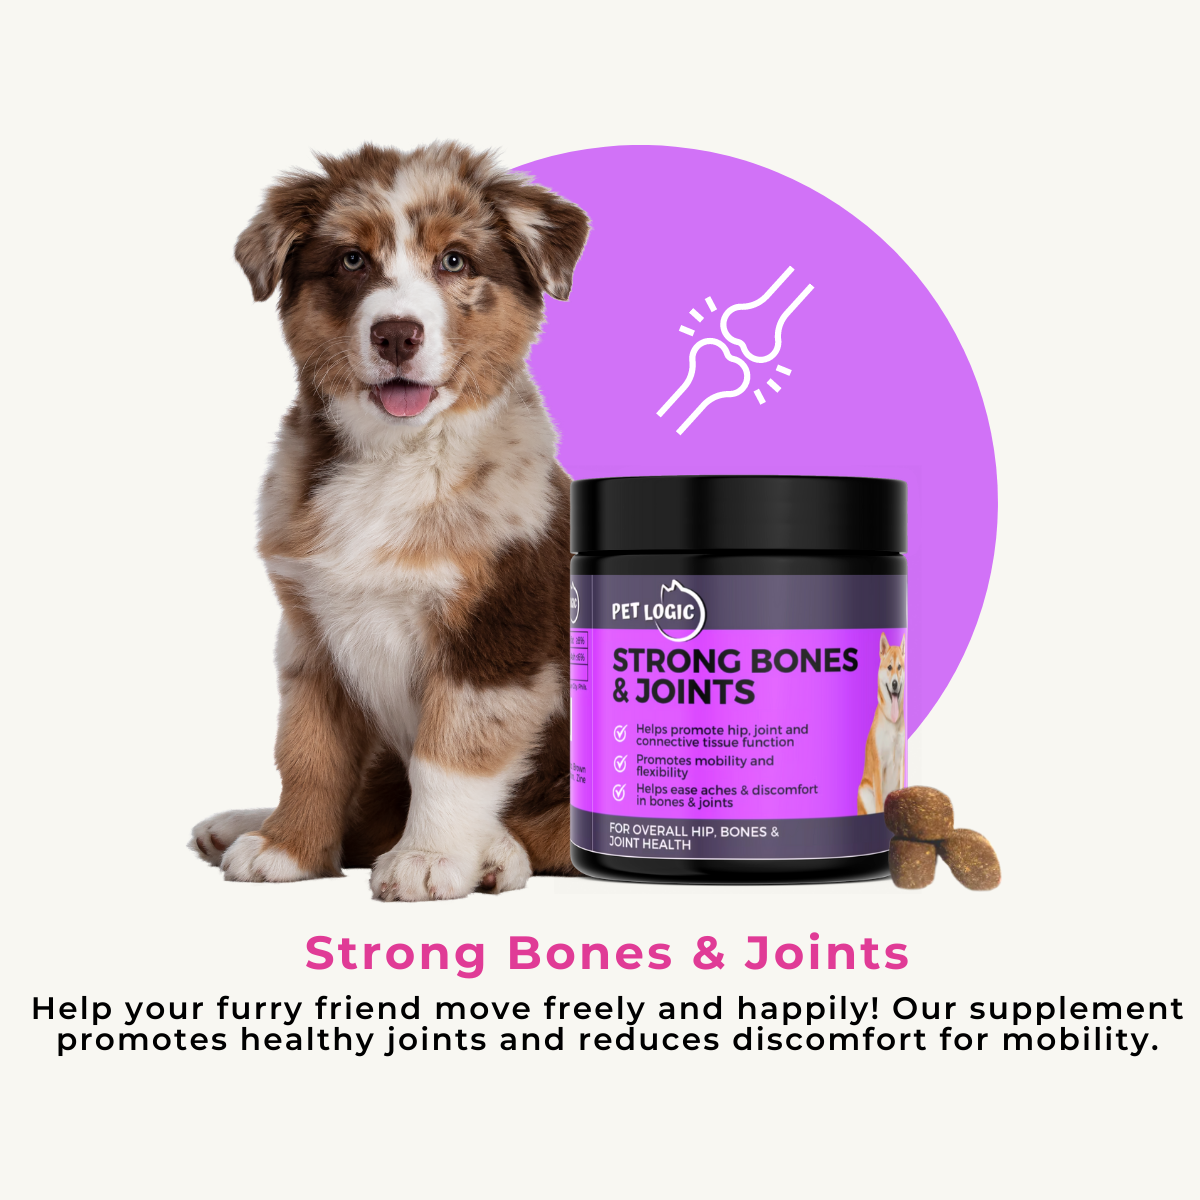 Pet Logic Probiotic Digestive Health + Strong Bones & Joints Pet Supplements